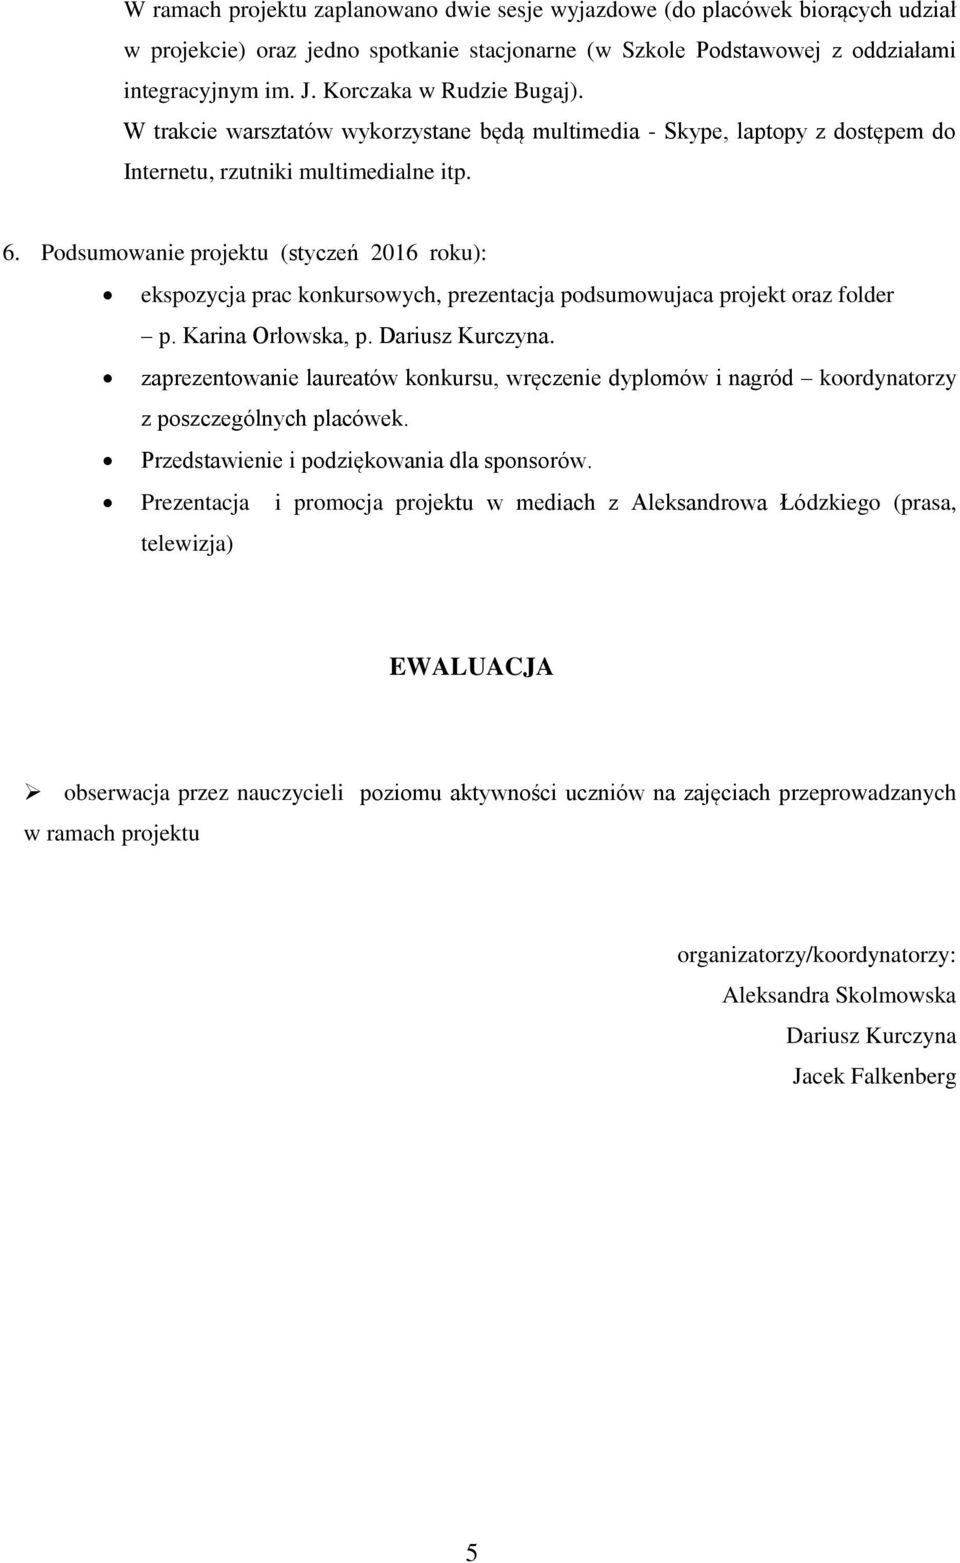 Podsumowanie projektu (styczeń 2016 roku): ekspozycja prac konkursowych, prezentacja podsumowujaca projekt oraz folder p. Karina Orłowska, p. Dariusz Kurczyna.